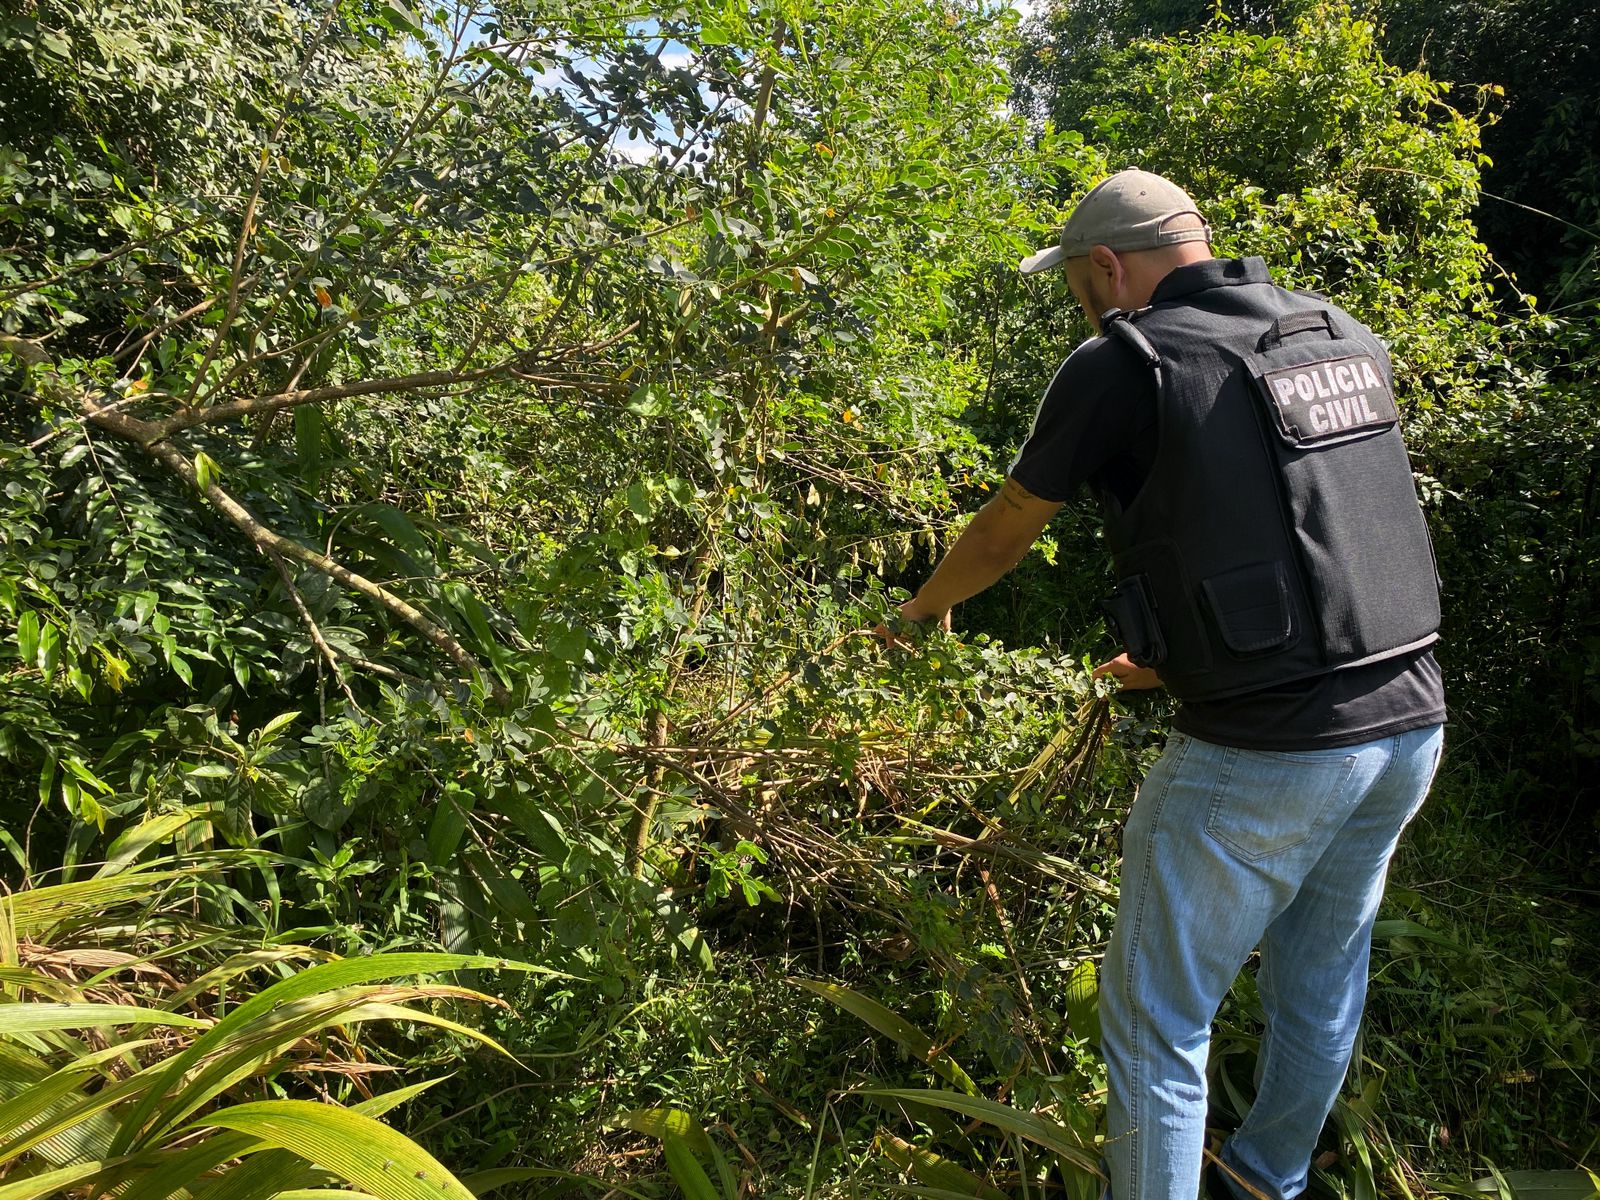 Corpo foi encontrado pela em uma zona de mata no bairro Lily Bacila, coberto por vegetação e galhos de árvores